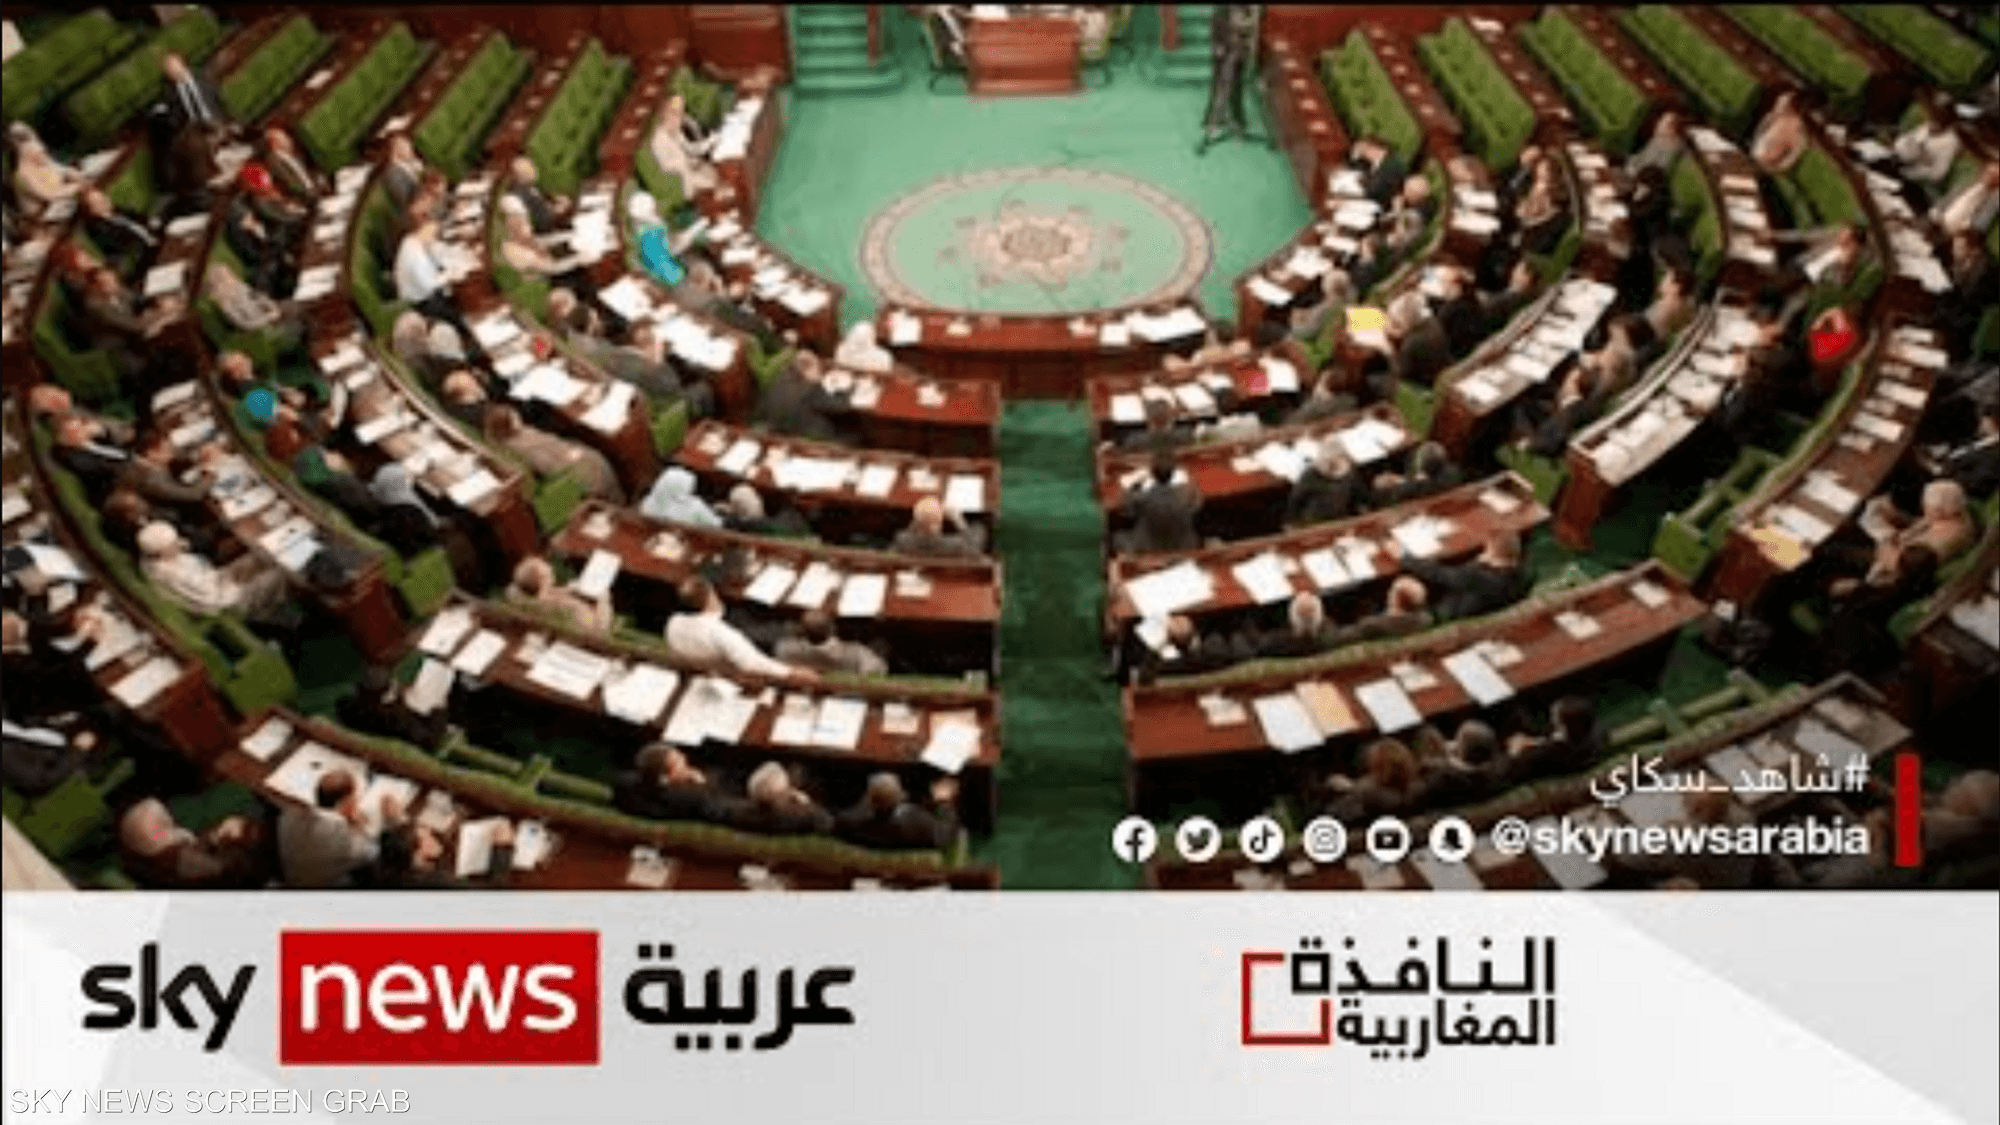 نواب في البرلمان الليبي يطلبون العودة لدستور 1951